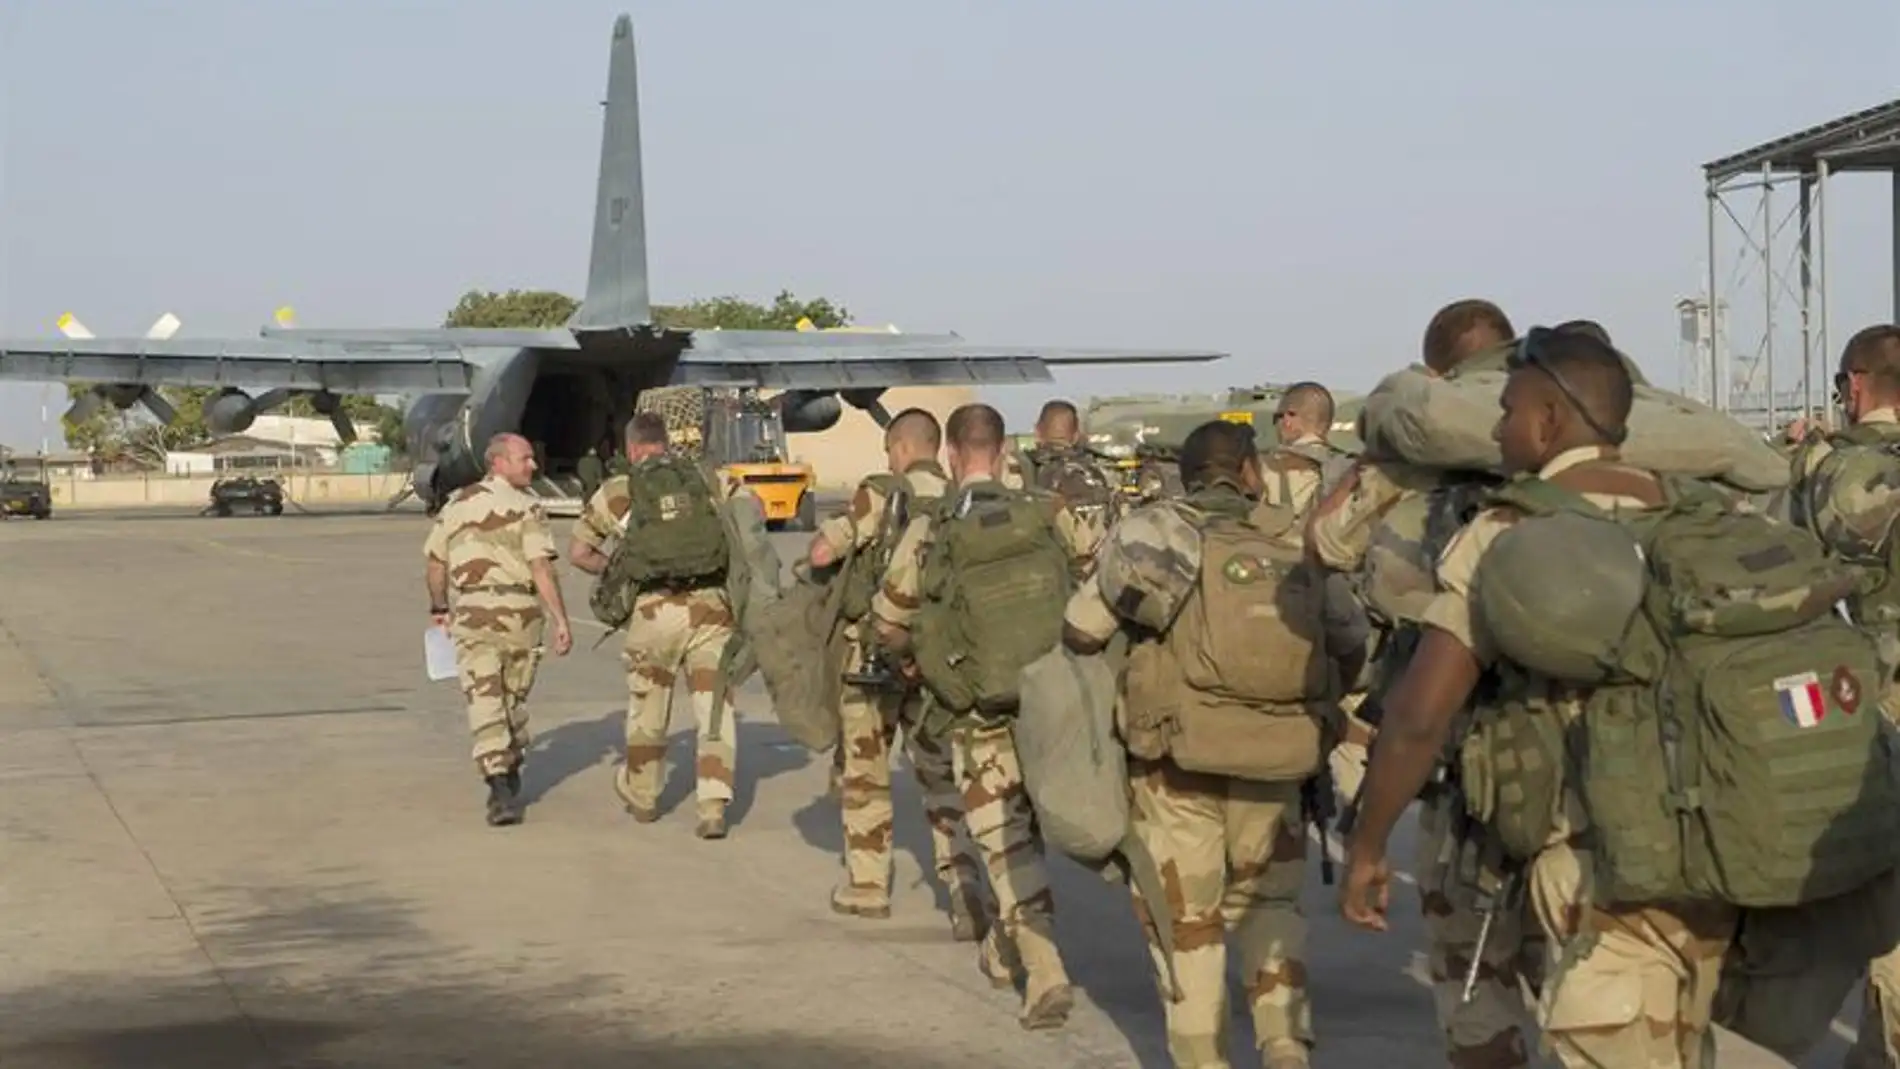 Al Qaeda amenaza con represalias a los ciudadanos galos por la intervención de Francia en Mali